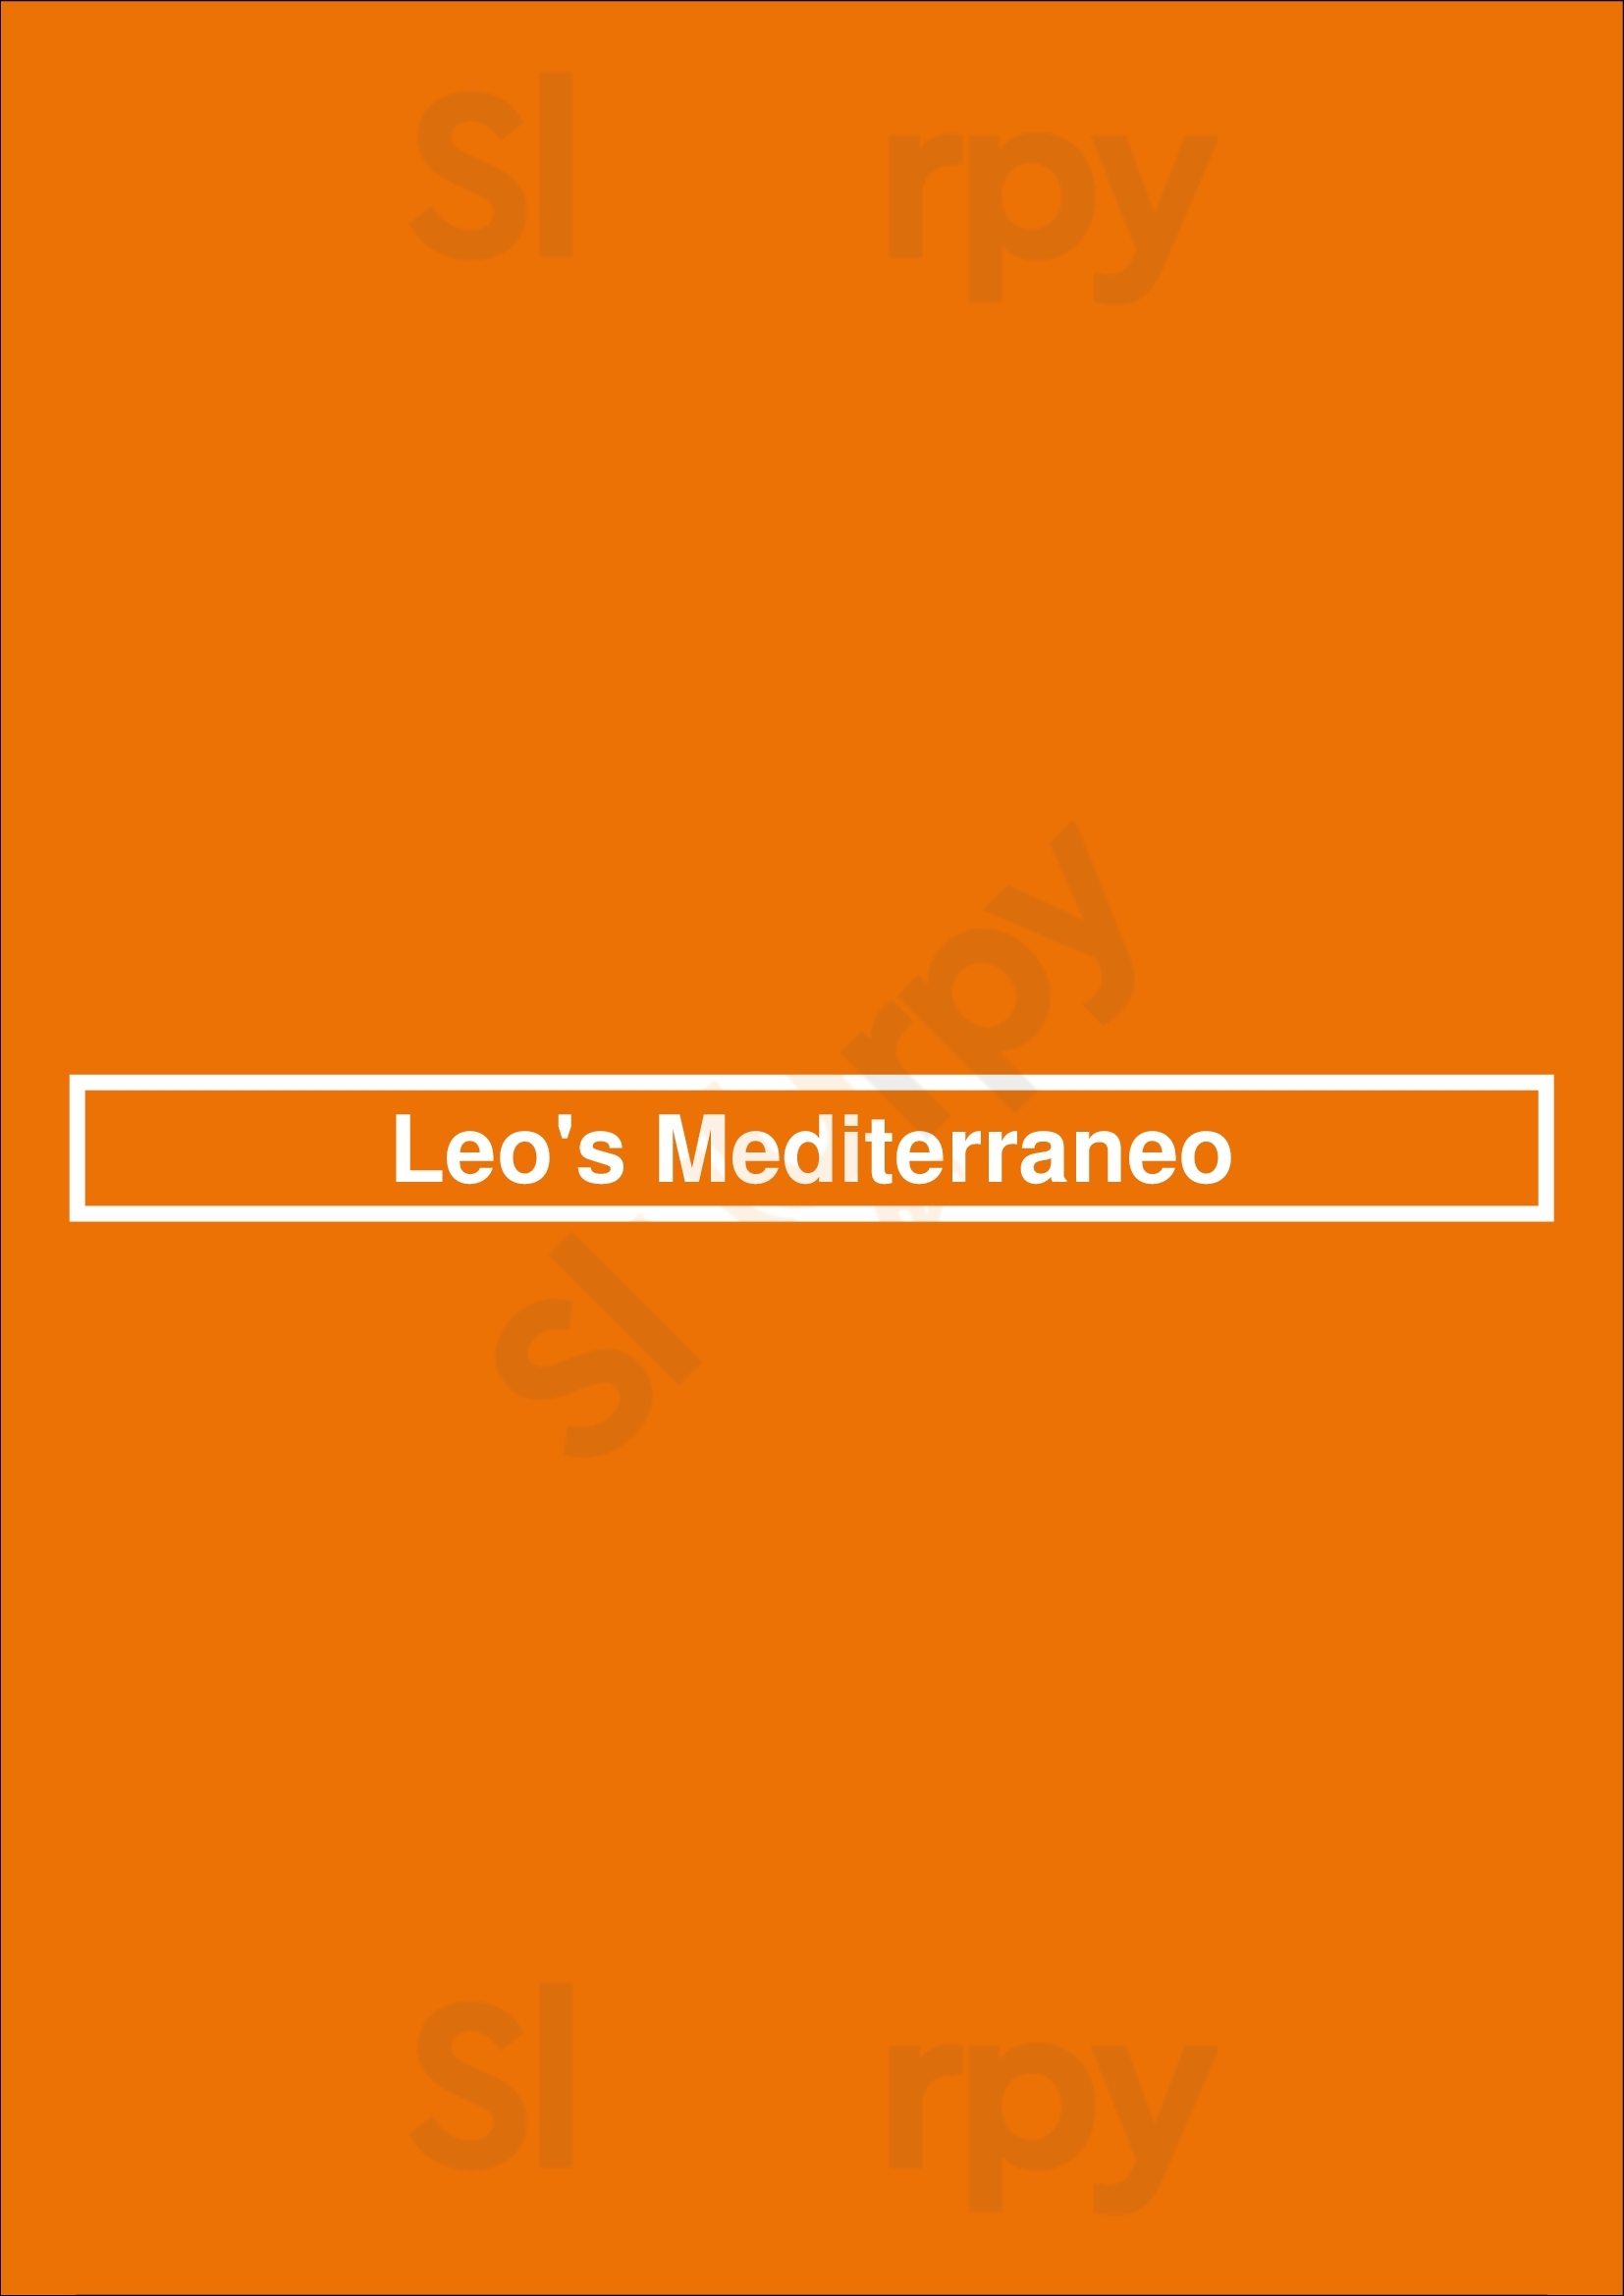 Leo's Mediterraneo Barcelona Menu - 1